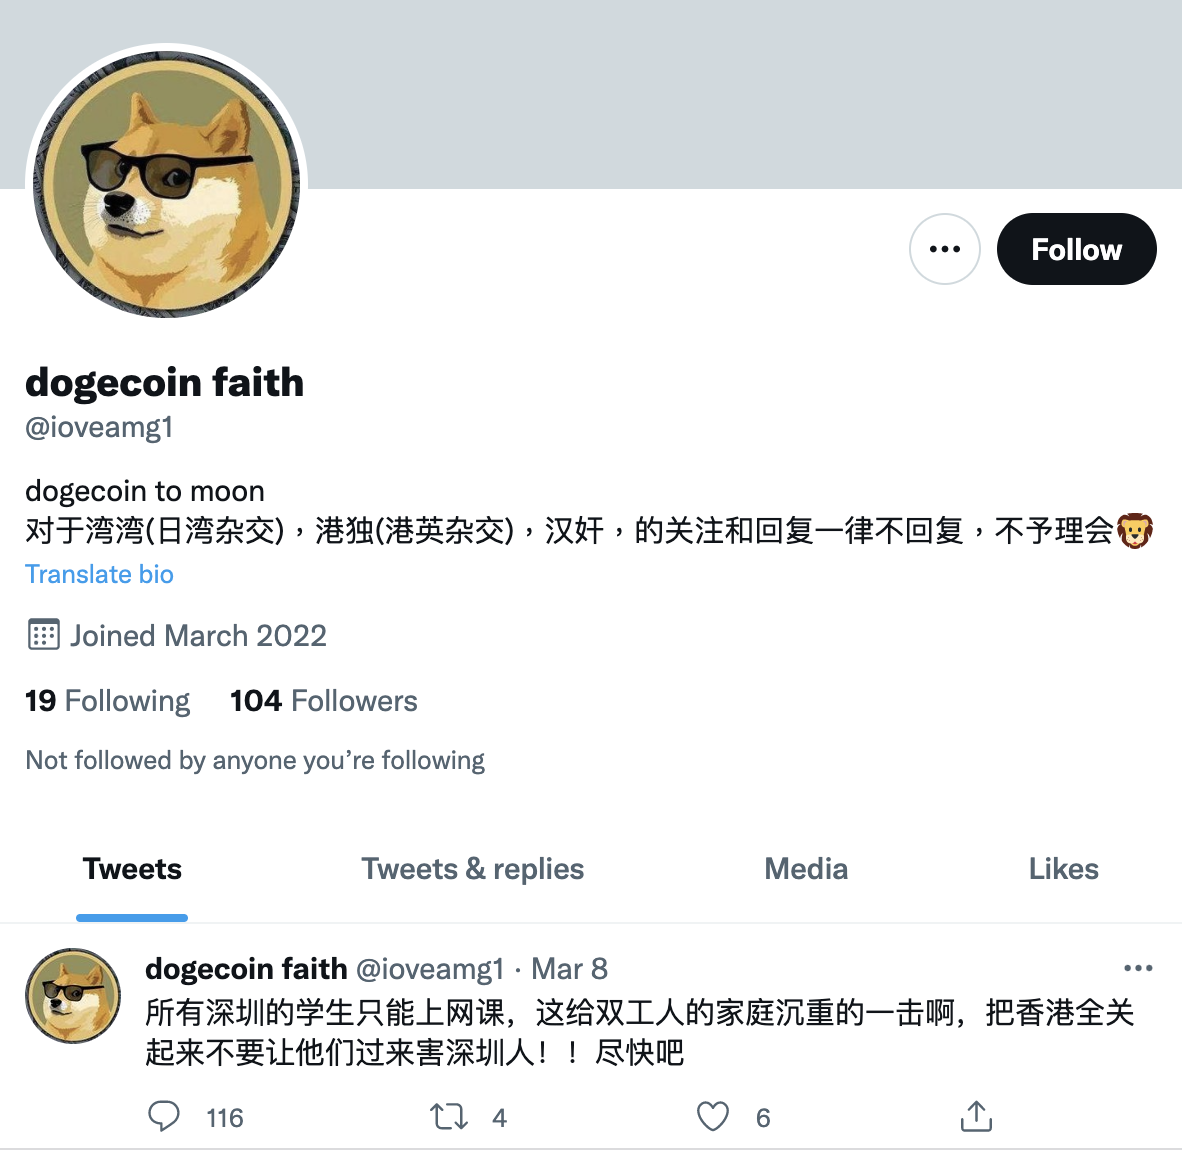 疑似中國網軍帳號dogecoin faith常在推特發表仇恨言論。   圖：擷取自Vitalik Buterin推特